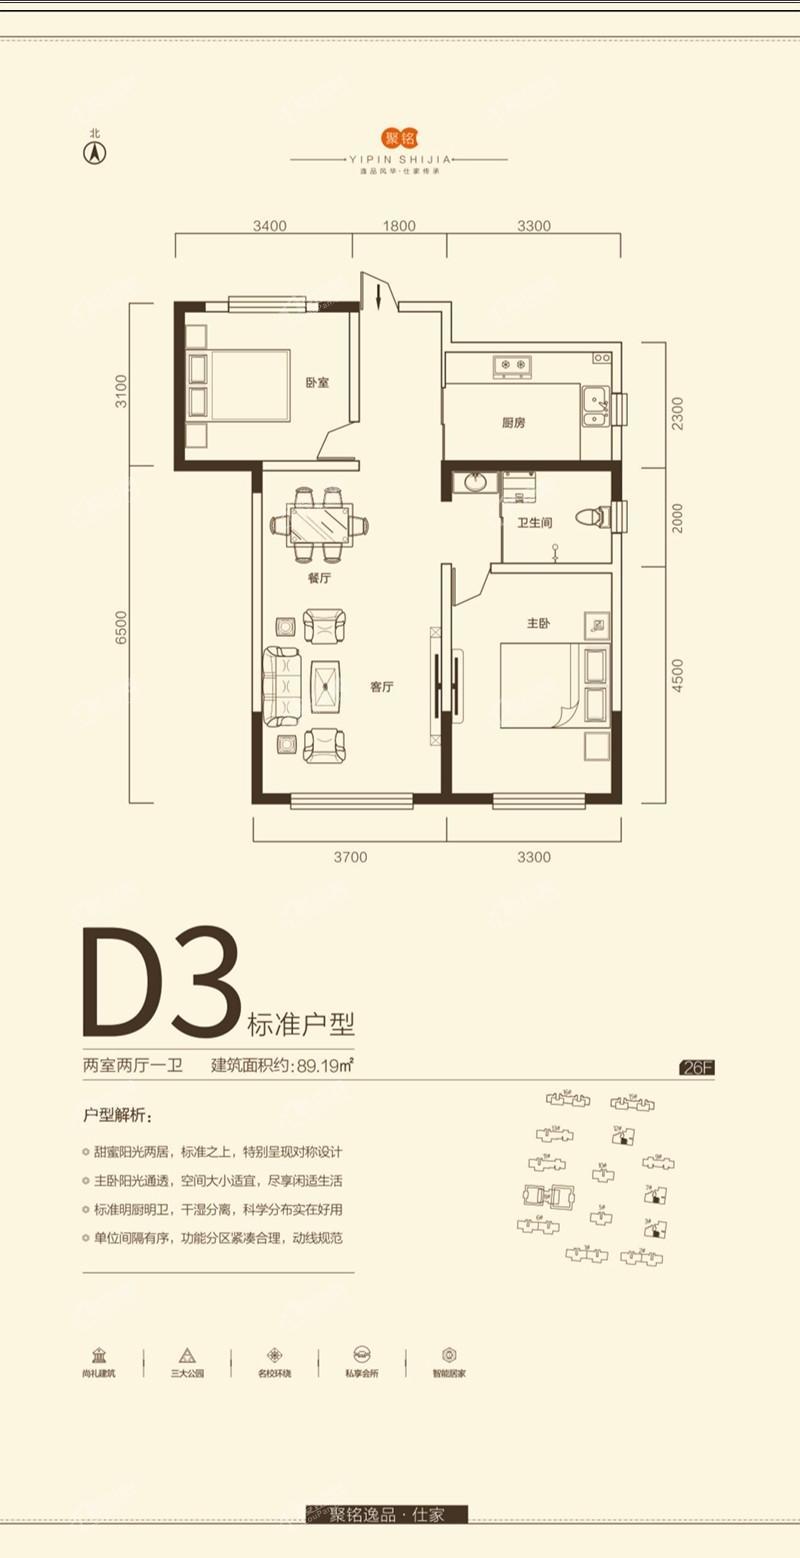 D3户型-两室两厅一卫-89.19平米